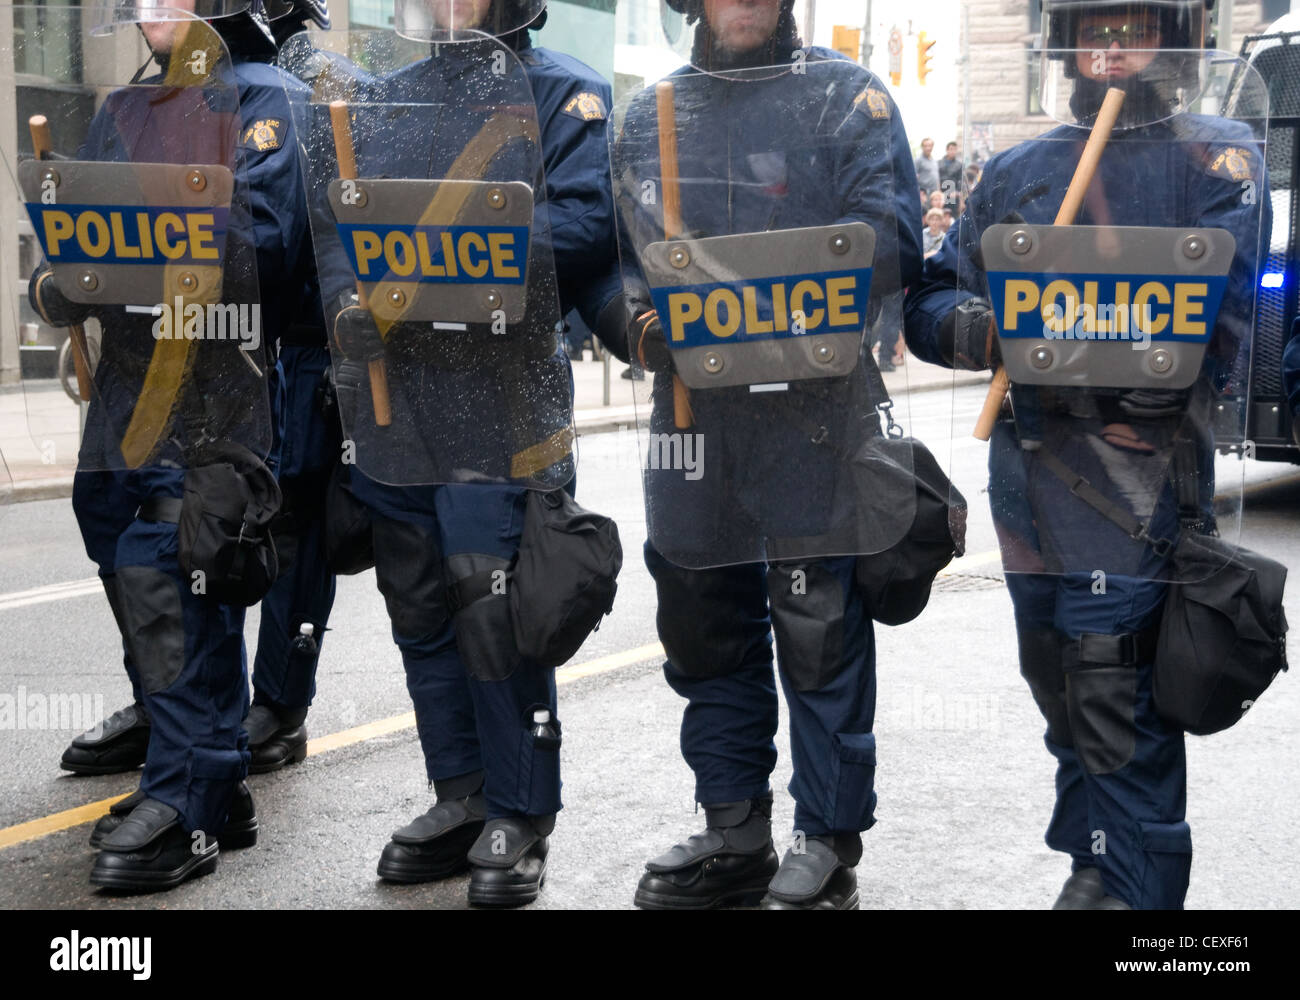 RCMP polizia rivolta verso i manifestanti con scudi e manganelli su una strada del centro durante il G20 vertice economico nel 2010, Toronto, Ontario, Canada. Foto Stock